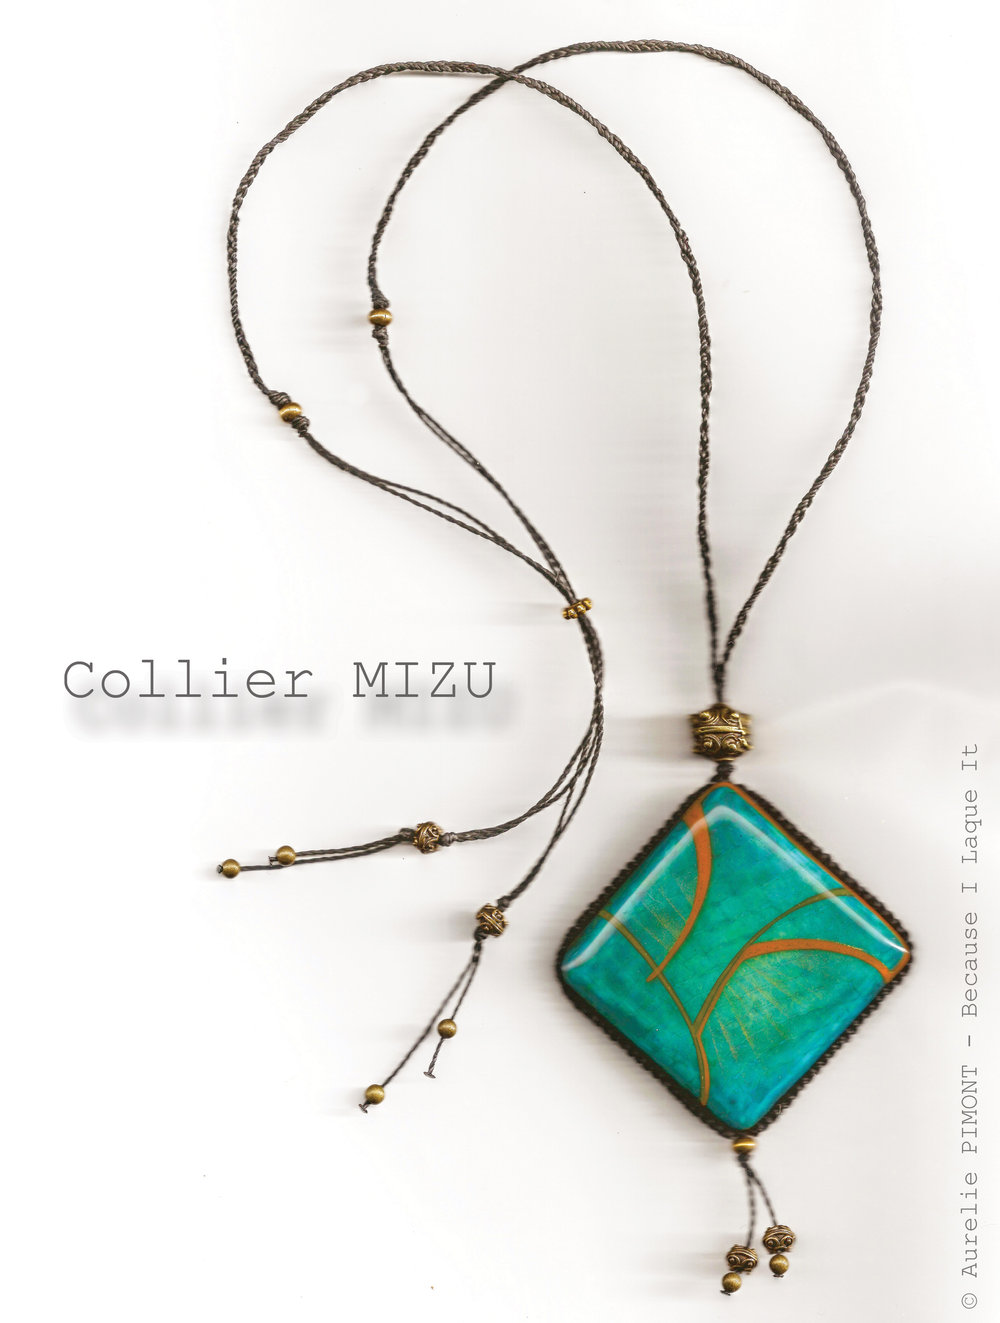 Collier MIZU<br/><span>Dimensions du carré : 5X5
Longueur du collier réglable : collier classique ou sautoir
Perles en métal couleur bronze/or vieilli</span>